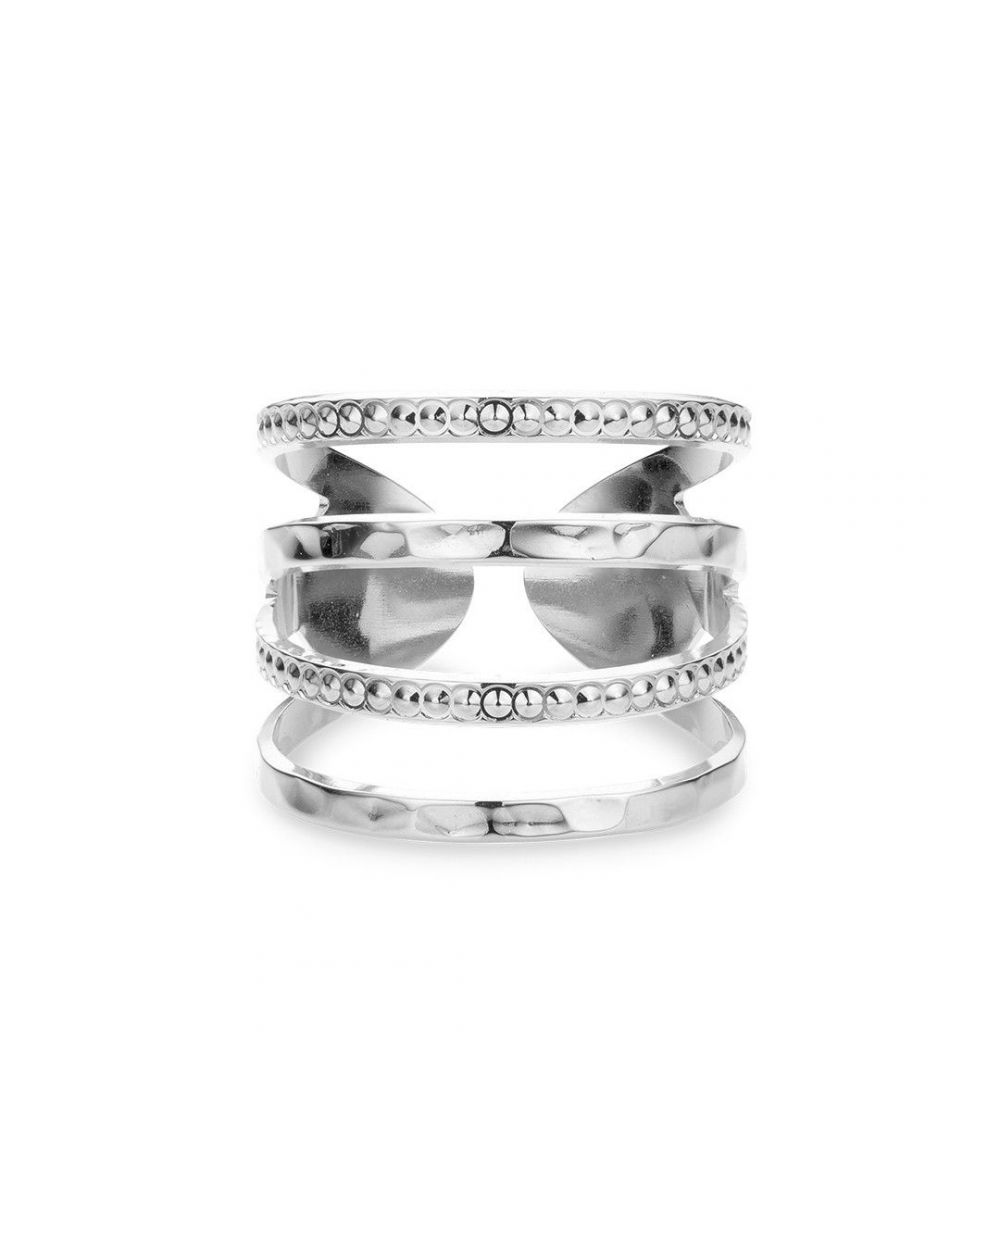 Mya Bay - New York hammered Ring